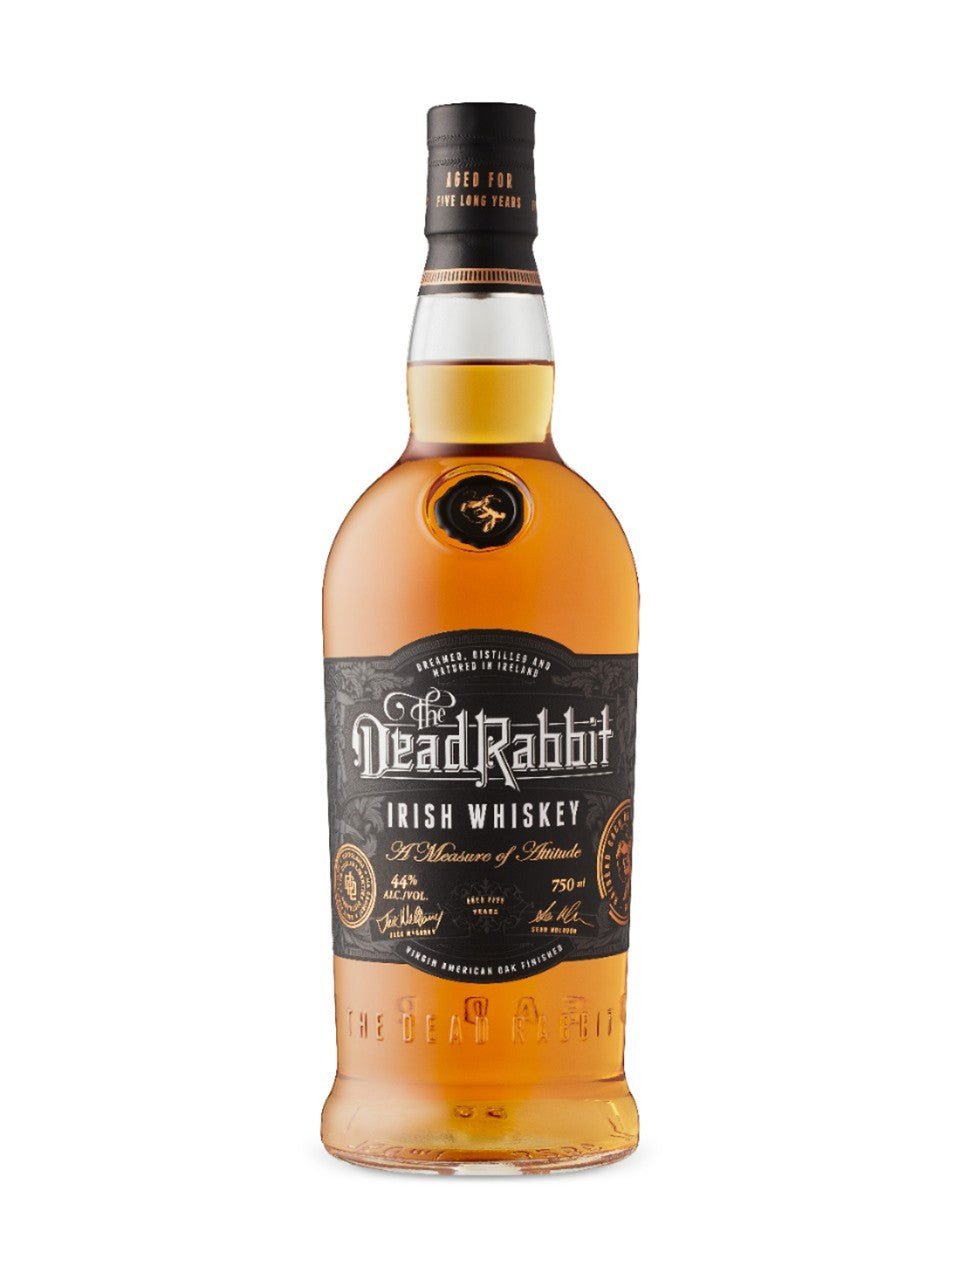 The Dead Rabbit Irish Whiskey 750 mL bottle